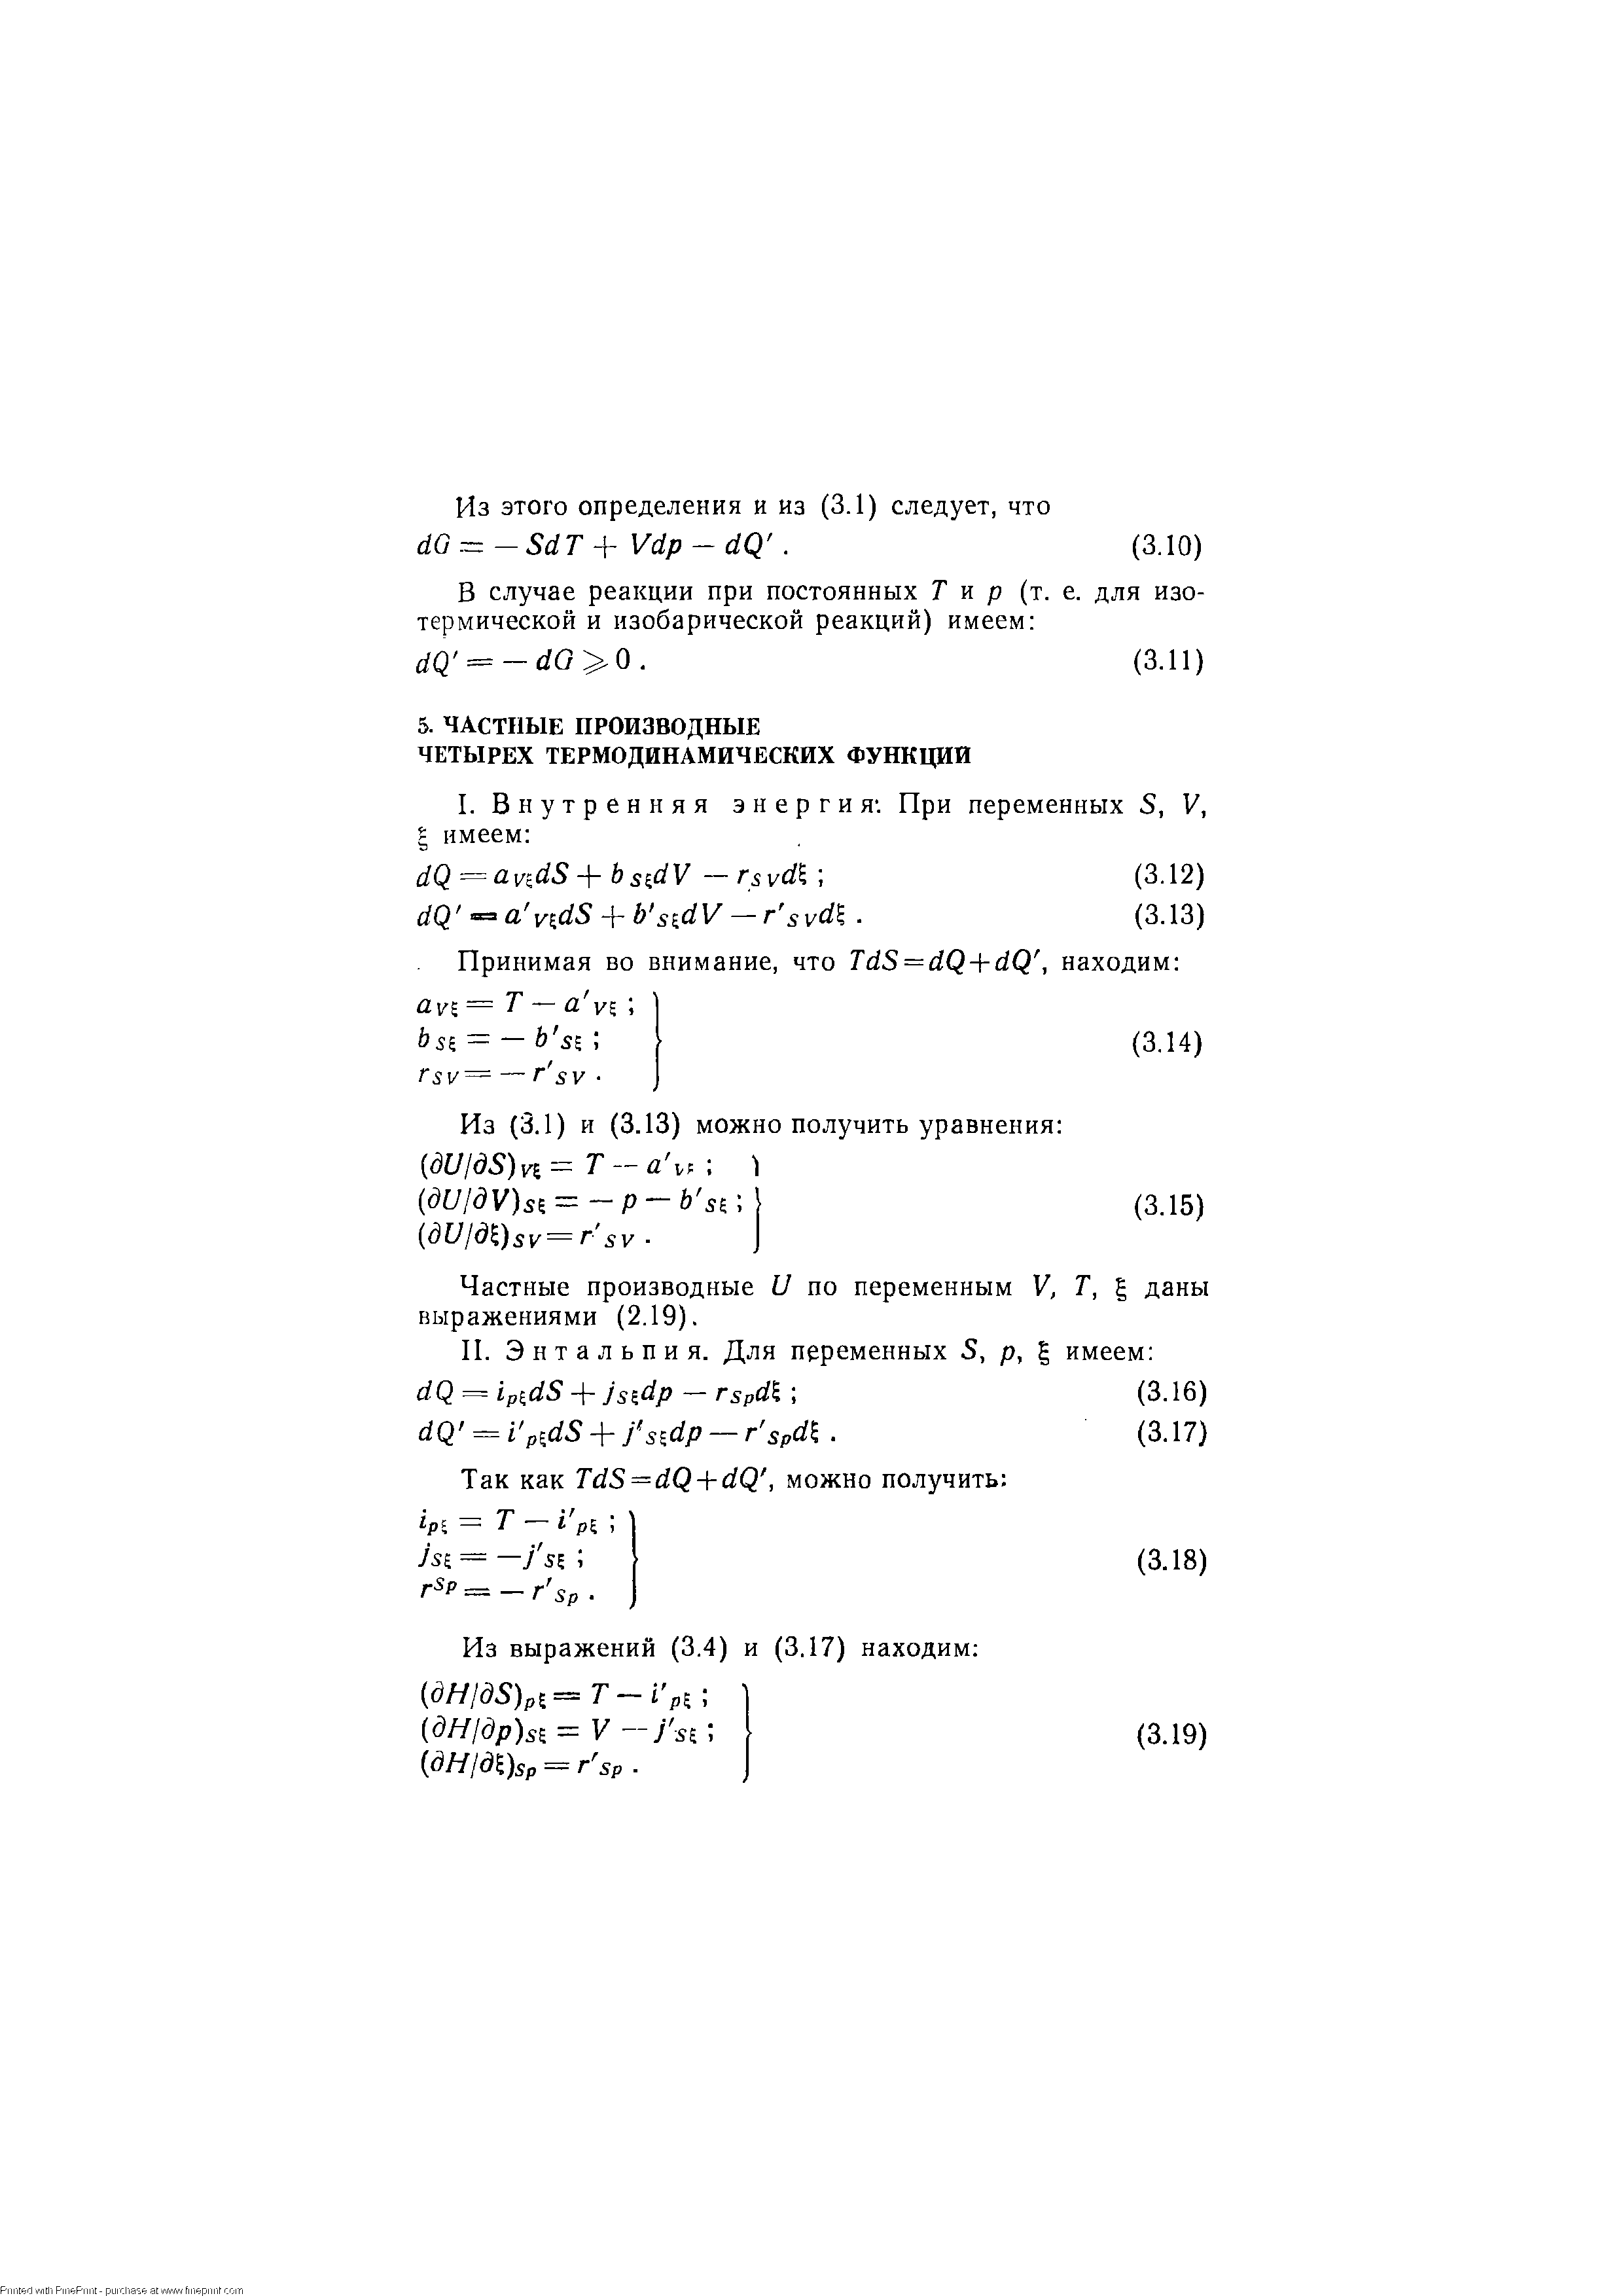 Частные производные U no переменным V, T, даны выражениями (2.19).
